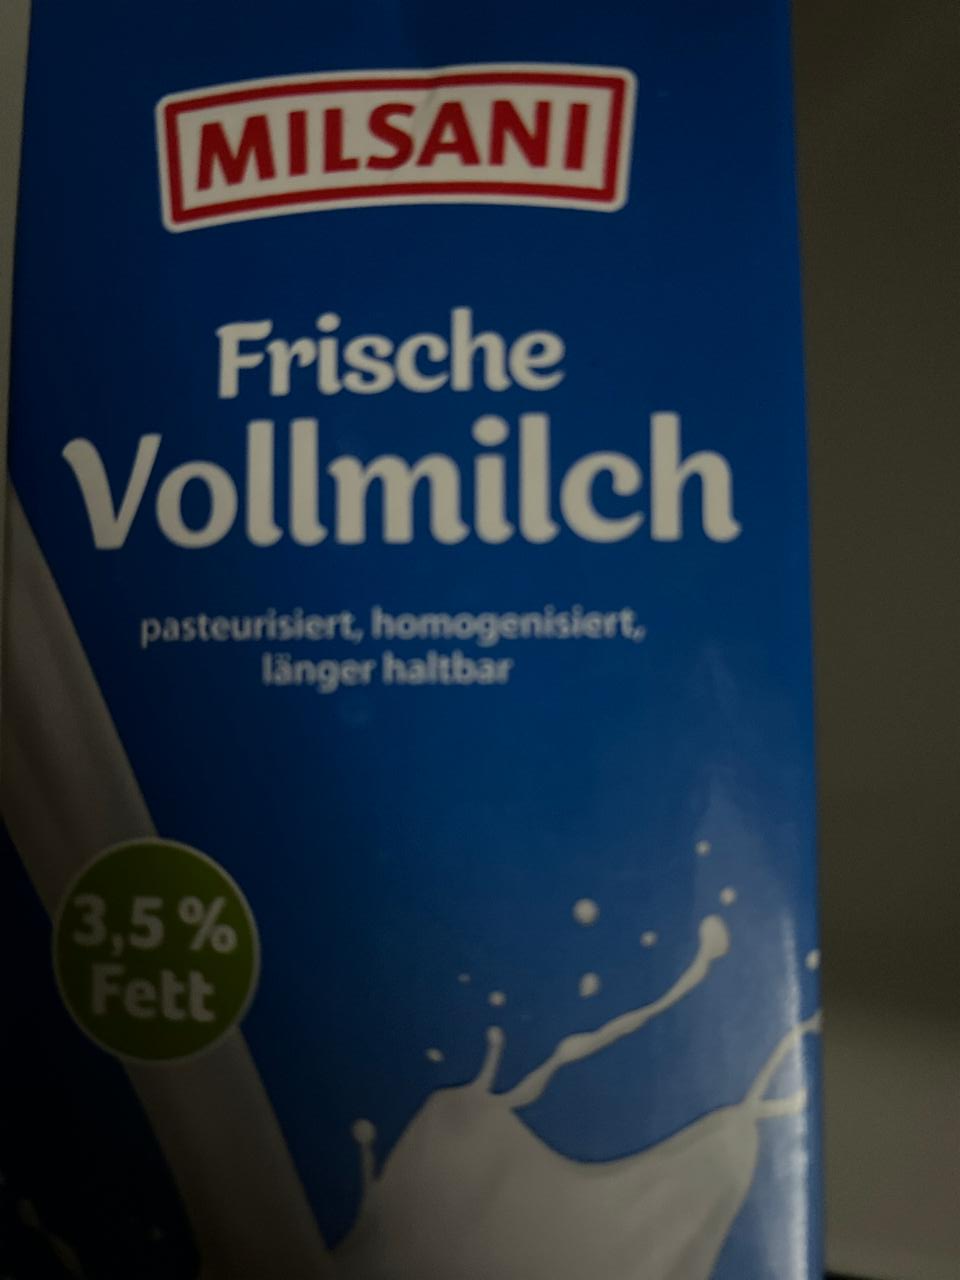 Fotografie - Frische Vollmilch 3,5% Milsani